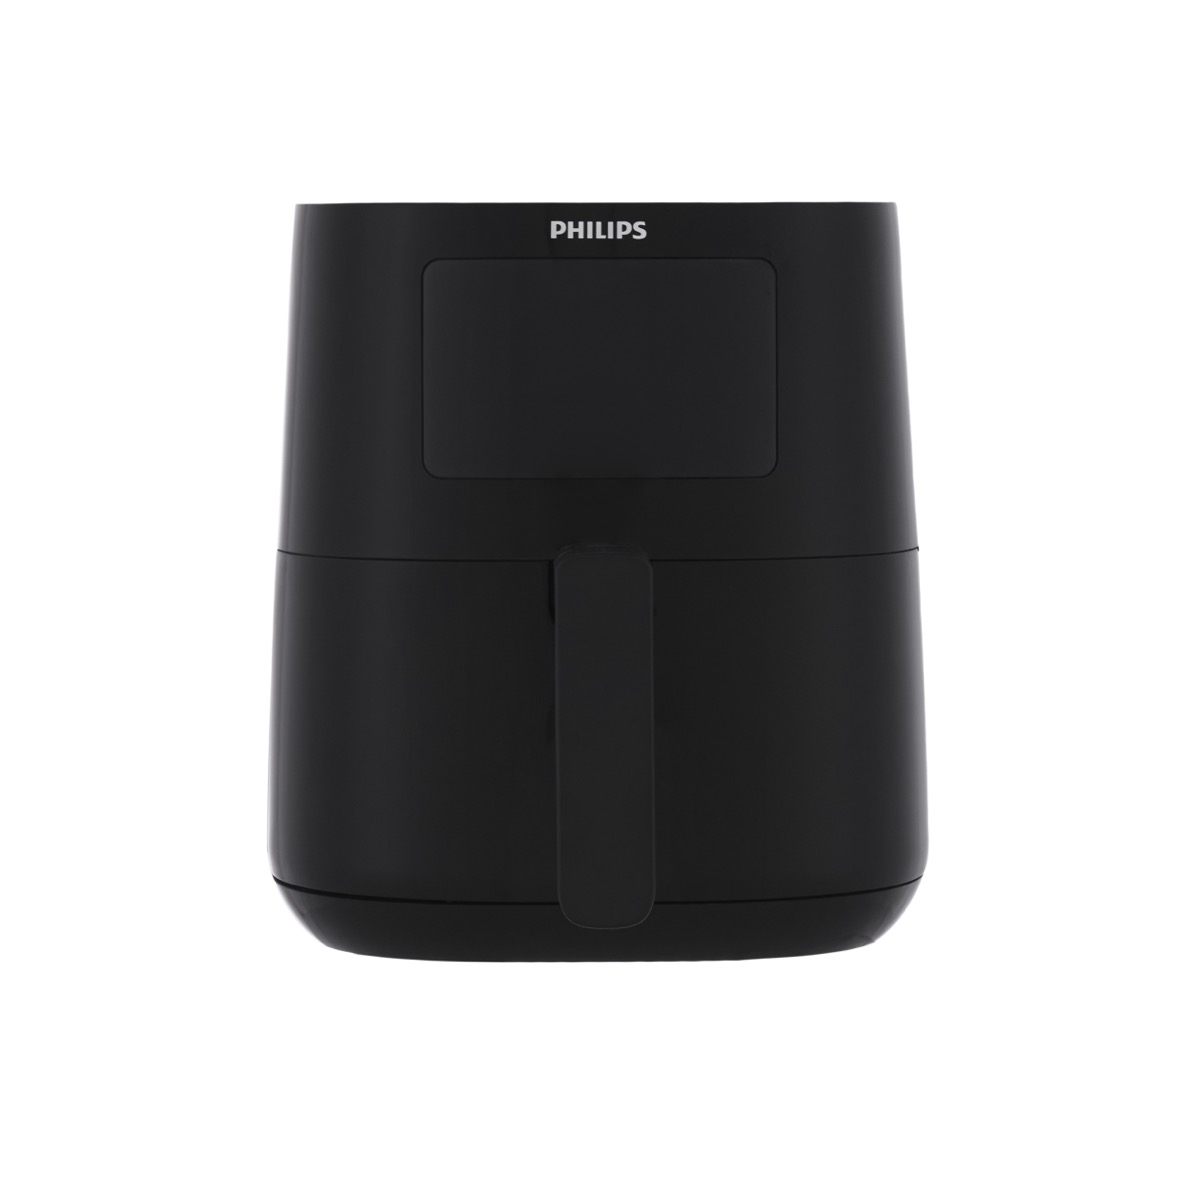 Philips Air Fryer, 4.1 Liters, Black - HD9252-91